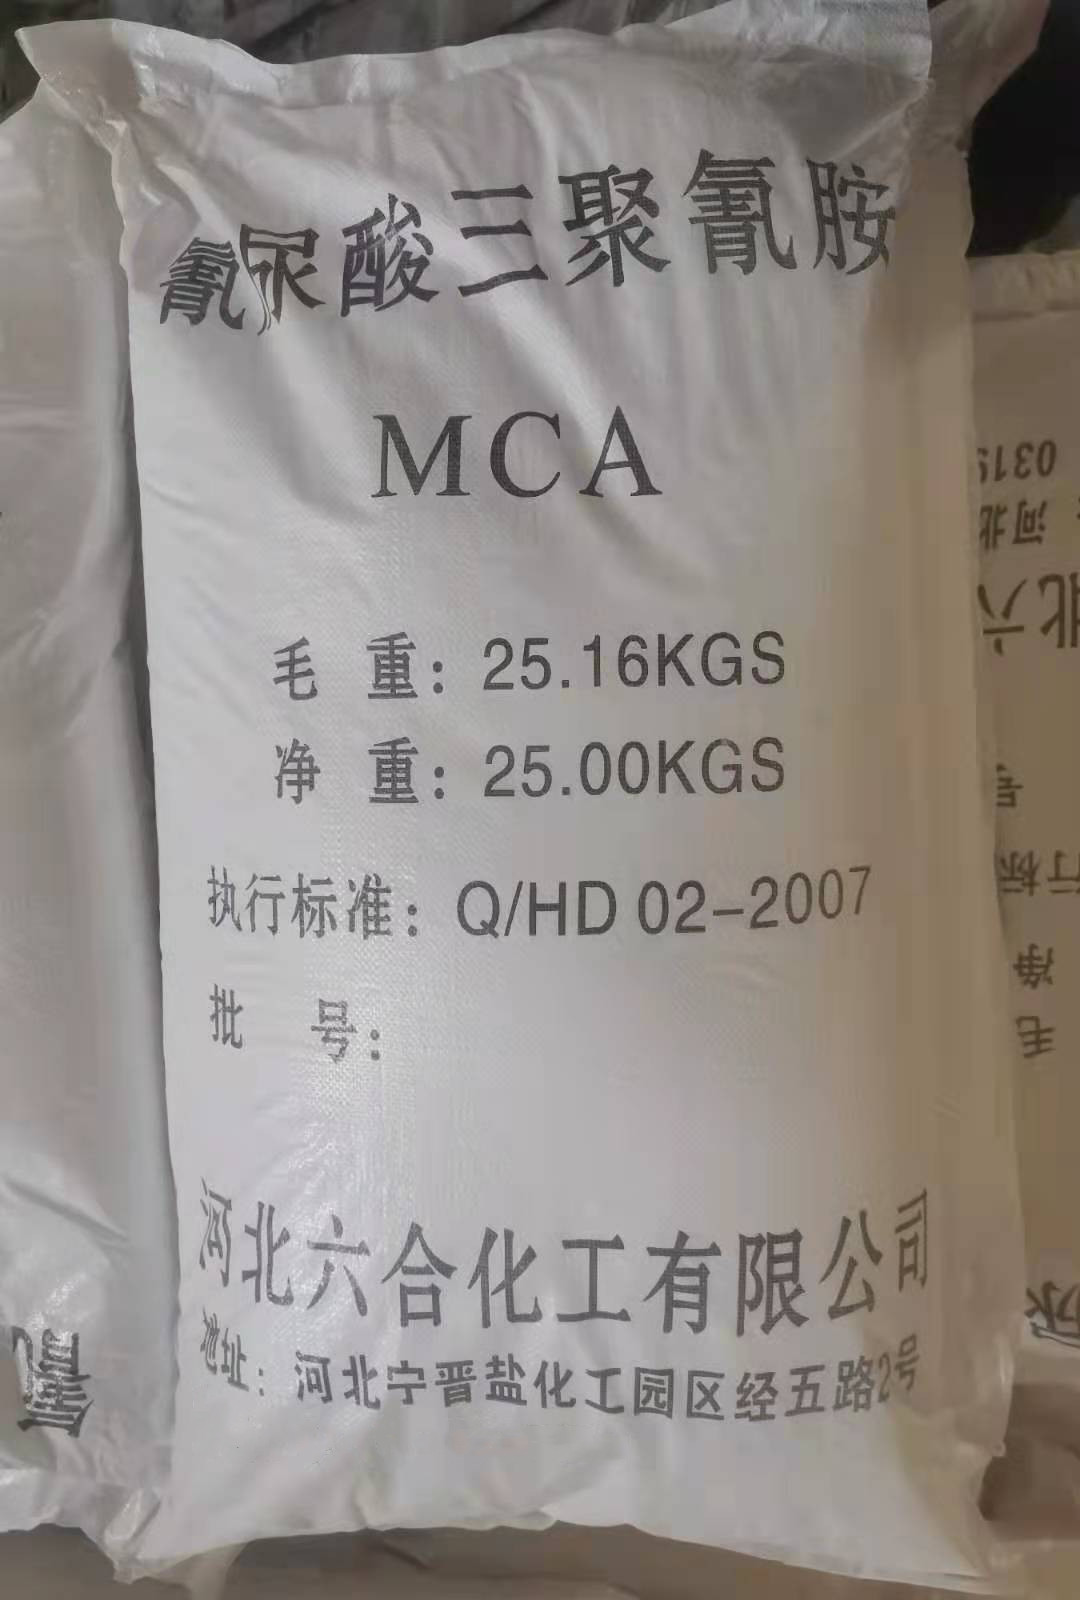 高氮阻燃剂 阻燃剂MCA图片